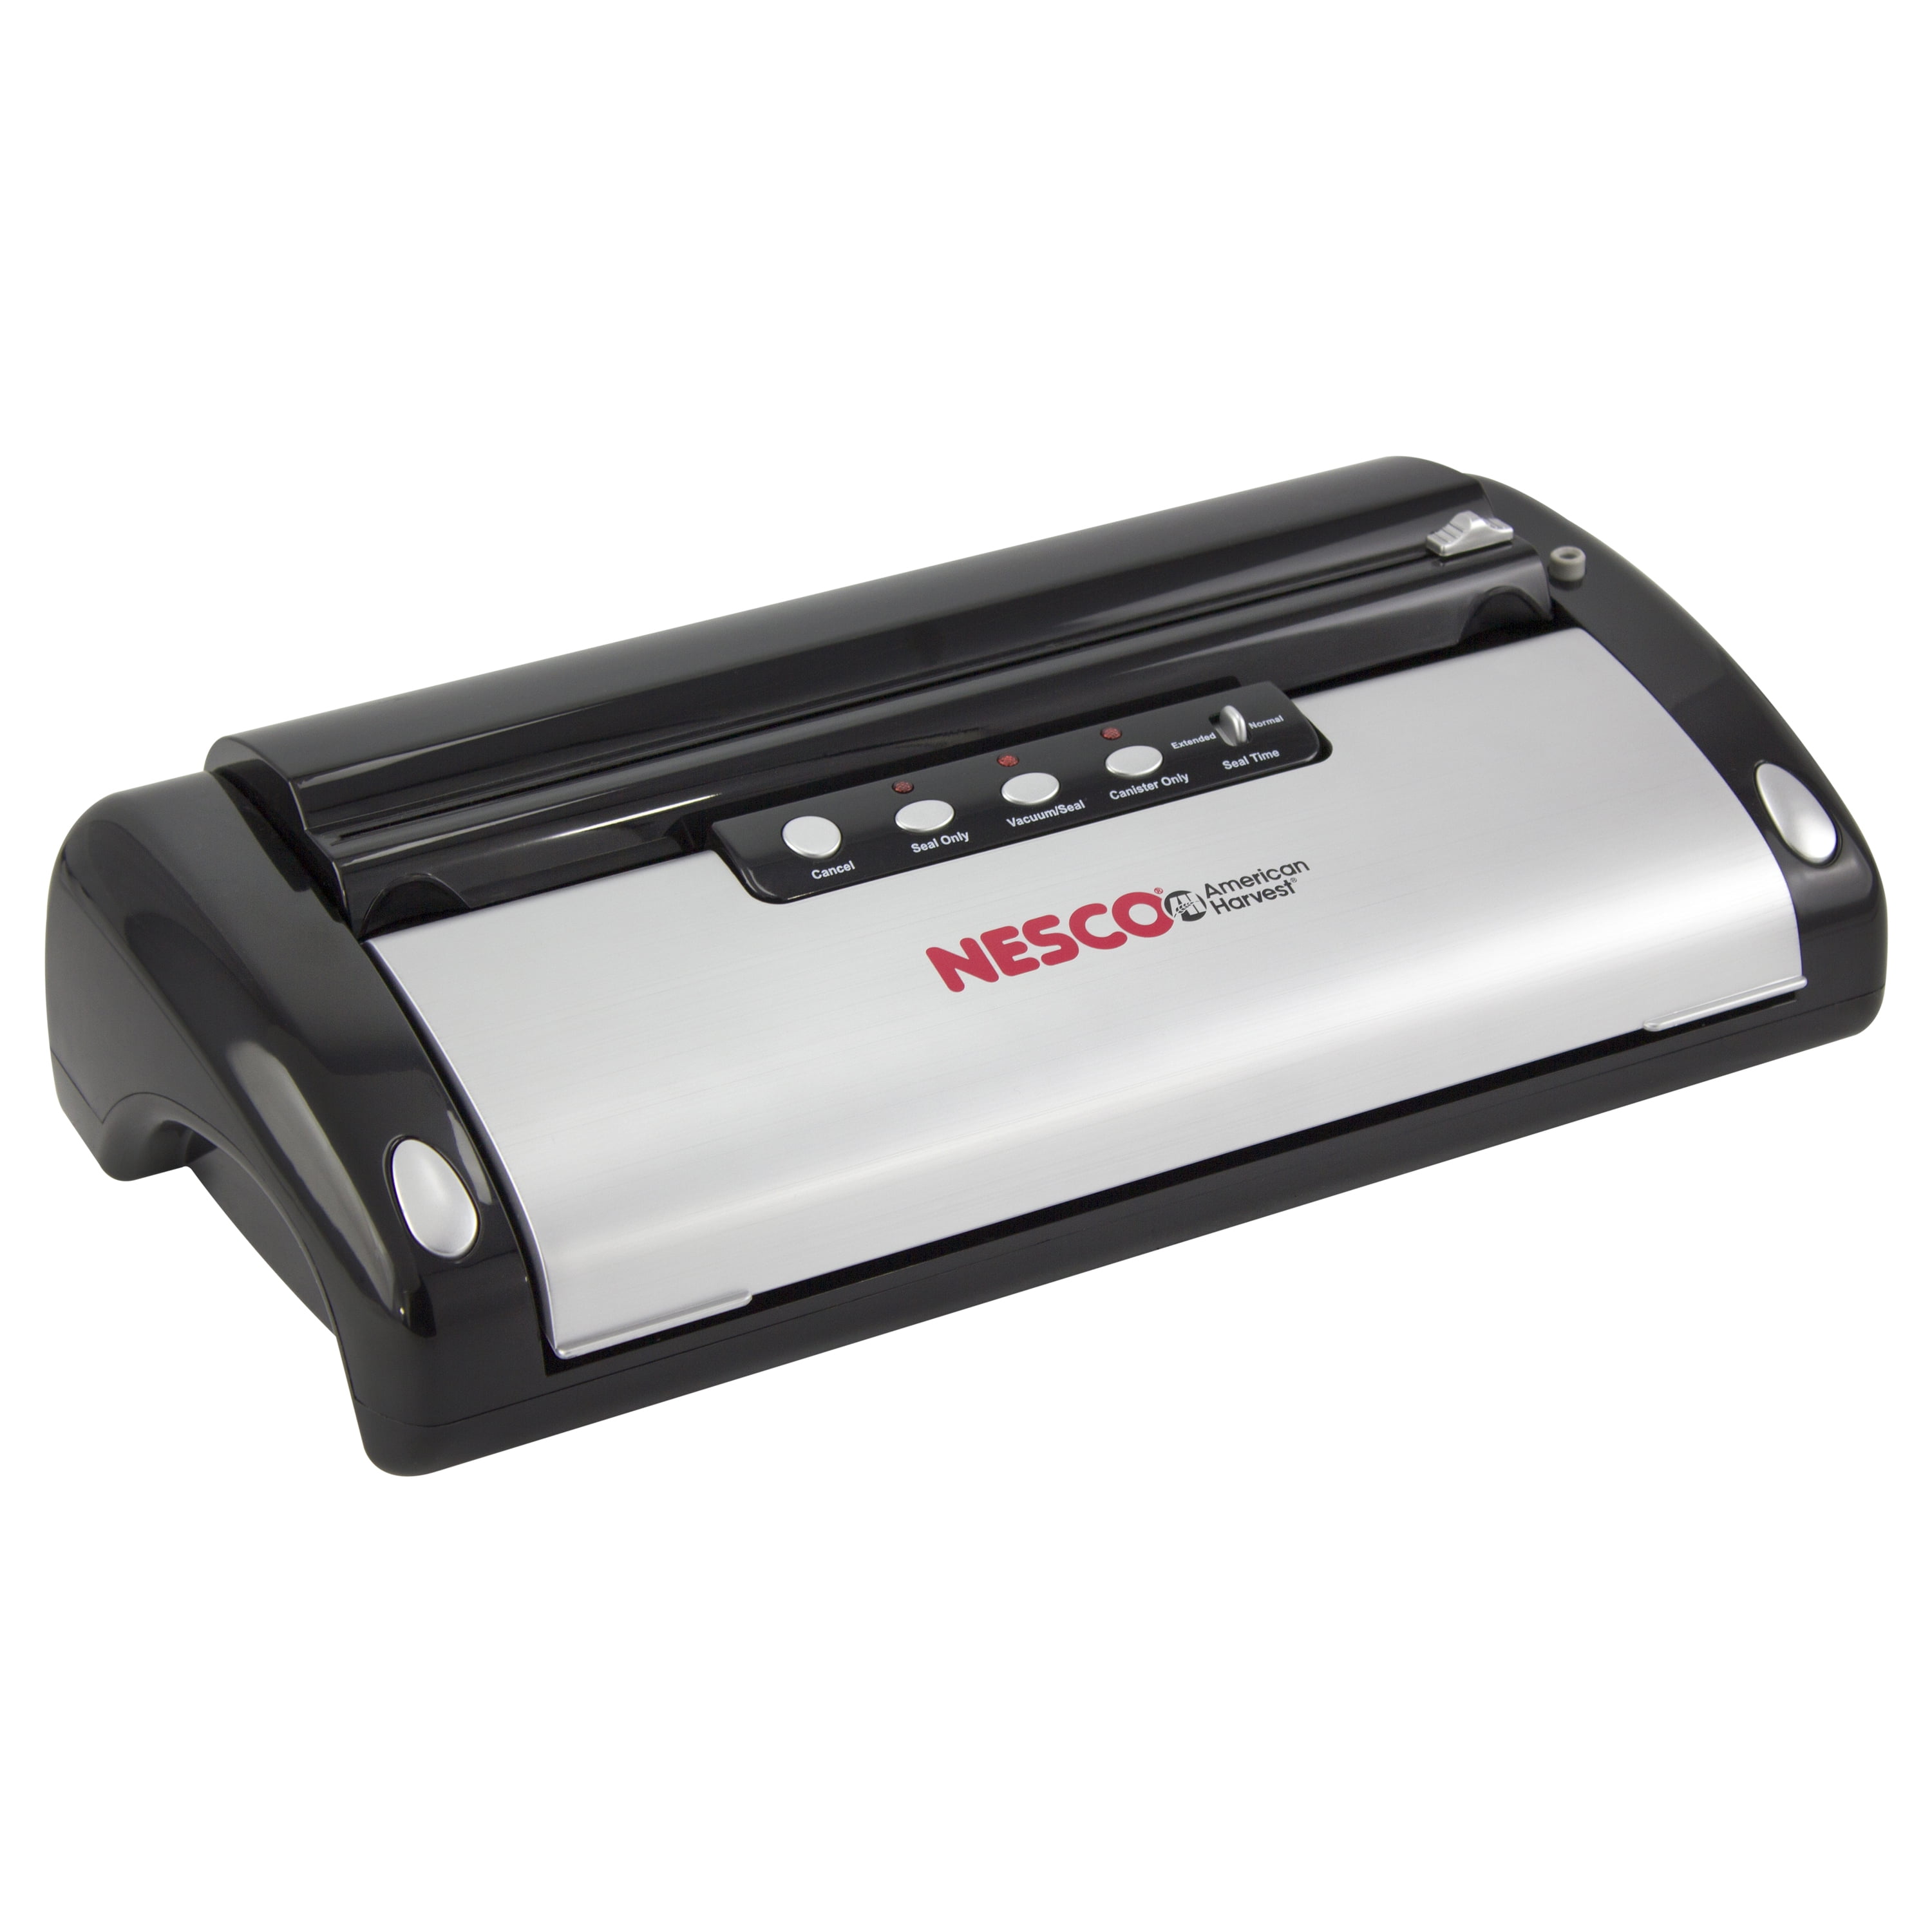 NESCO VS-12 Vacuum Sealer - Silver for sale online